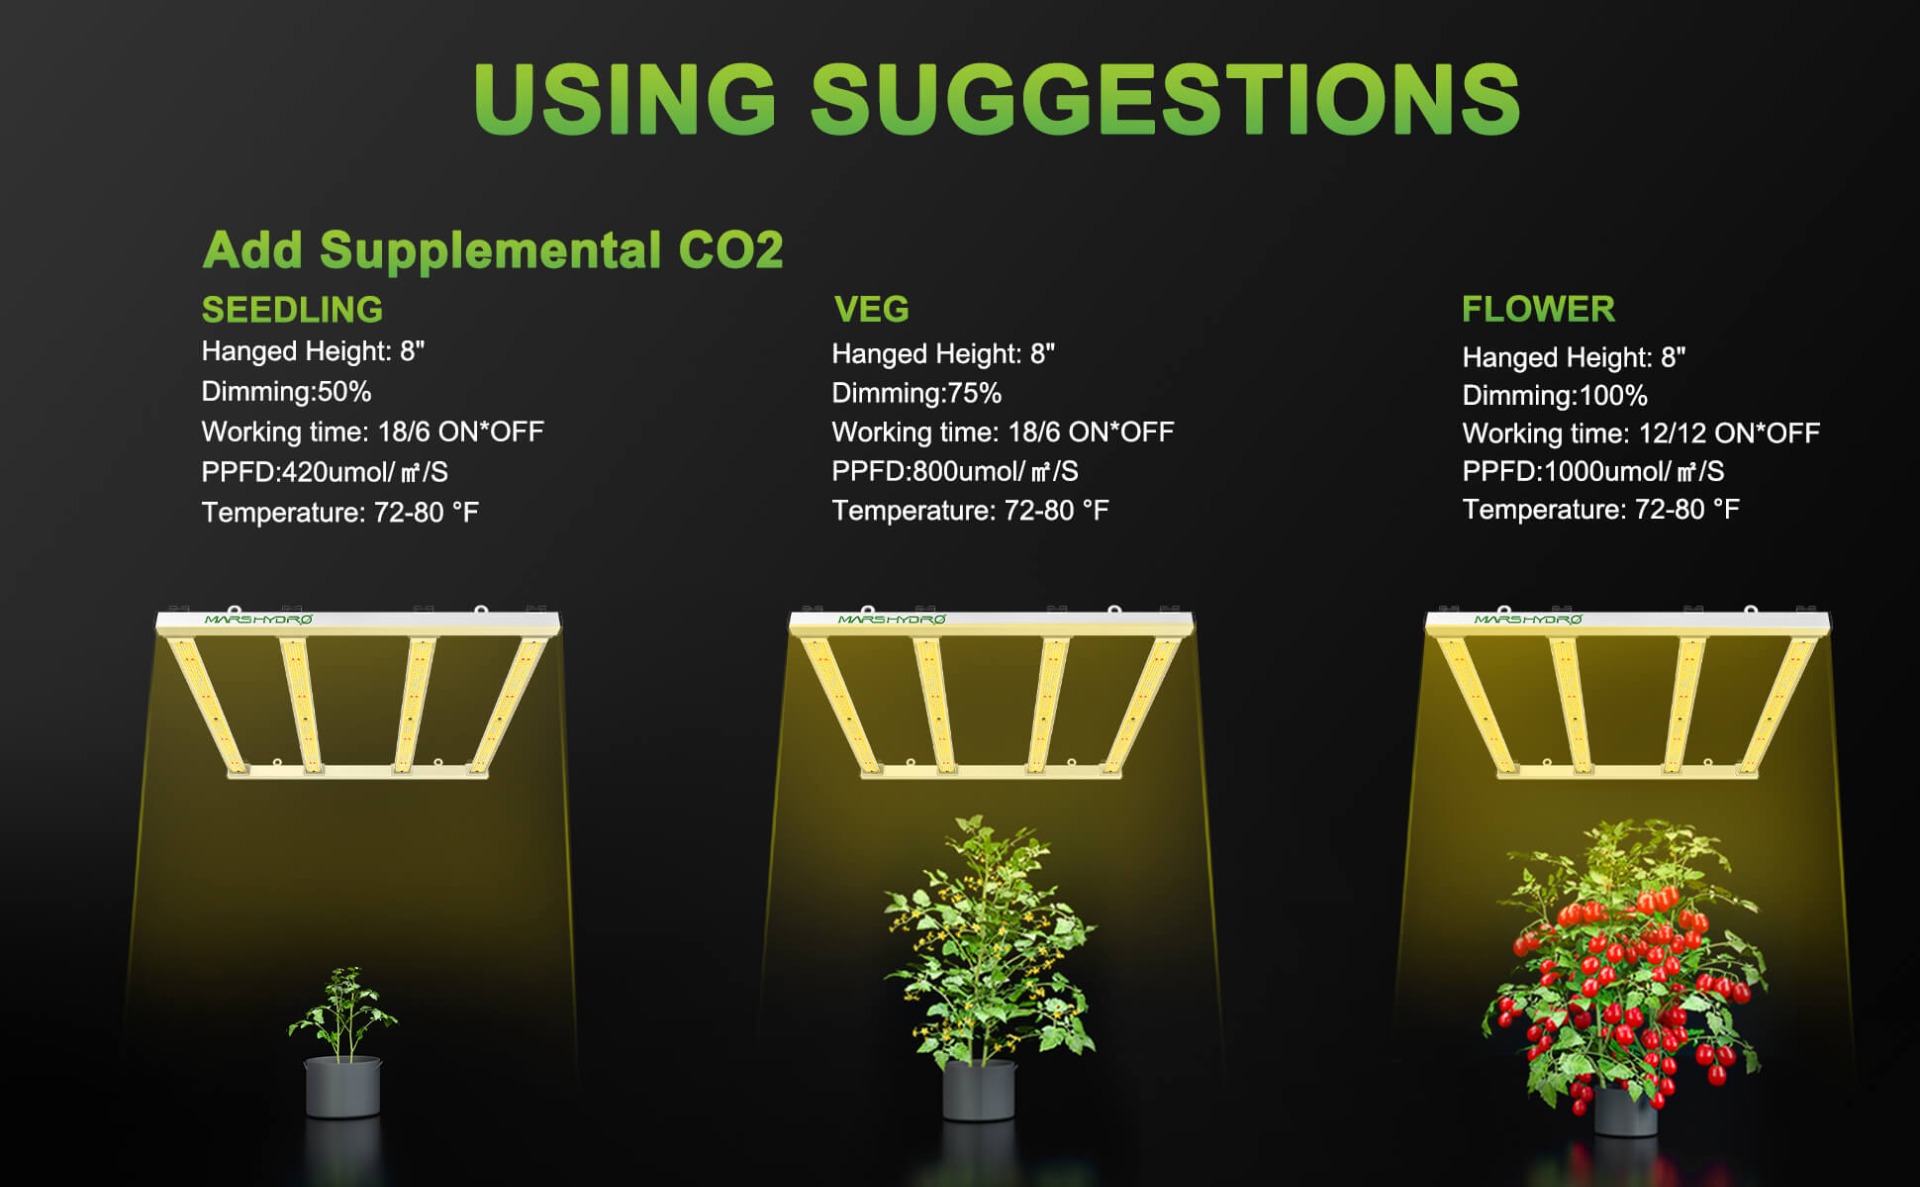 Светодиодный светильник Mars Hydro FC-E3000 для выращивания растений с использованием предложения при добавлении CO2